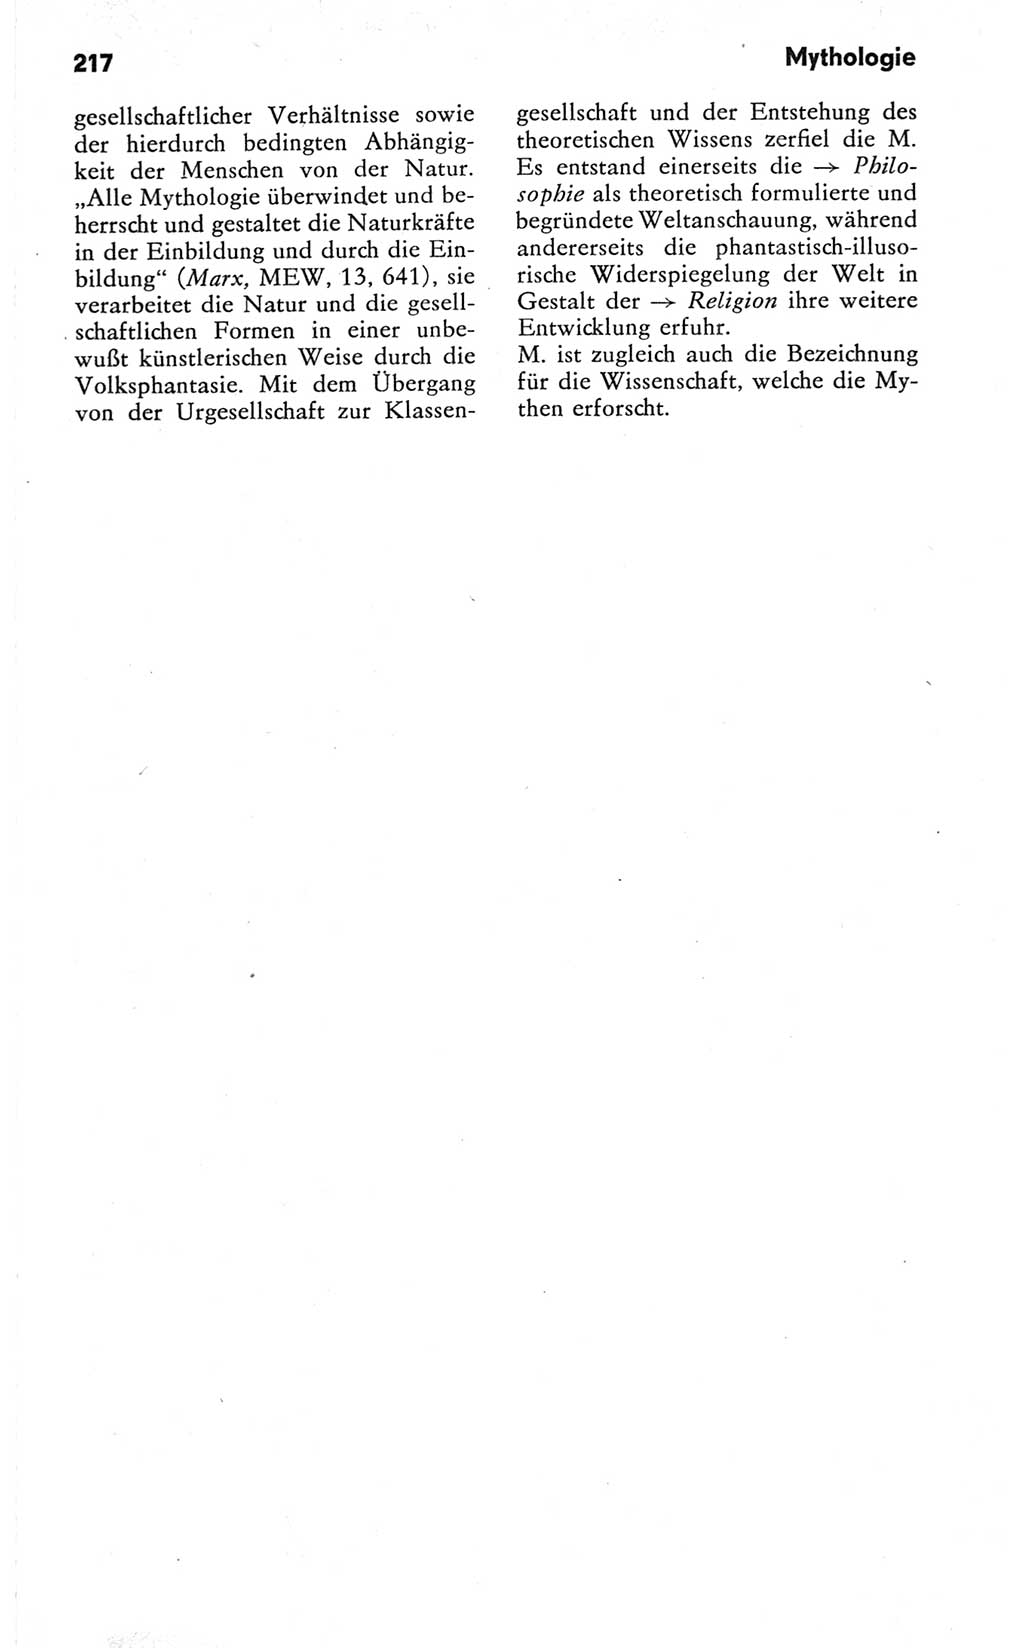 Kleines Wörterbuch der marxistisch-leninistischen Philosophie [Deutsche Demokratische Republik (DDR)] 1981, Seite 217 (Kl. Wb. ML Phil. DDR 1981, S. 217)